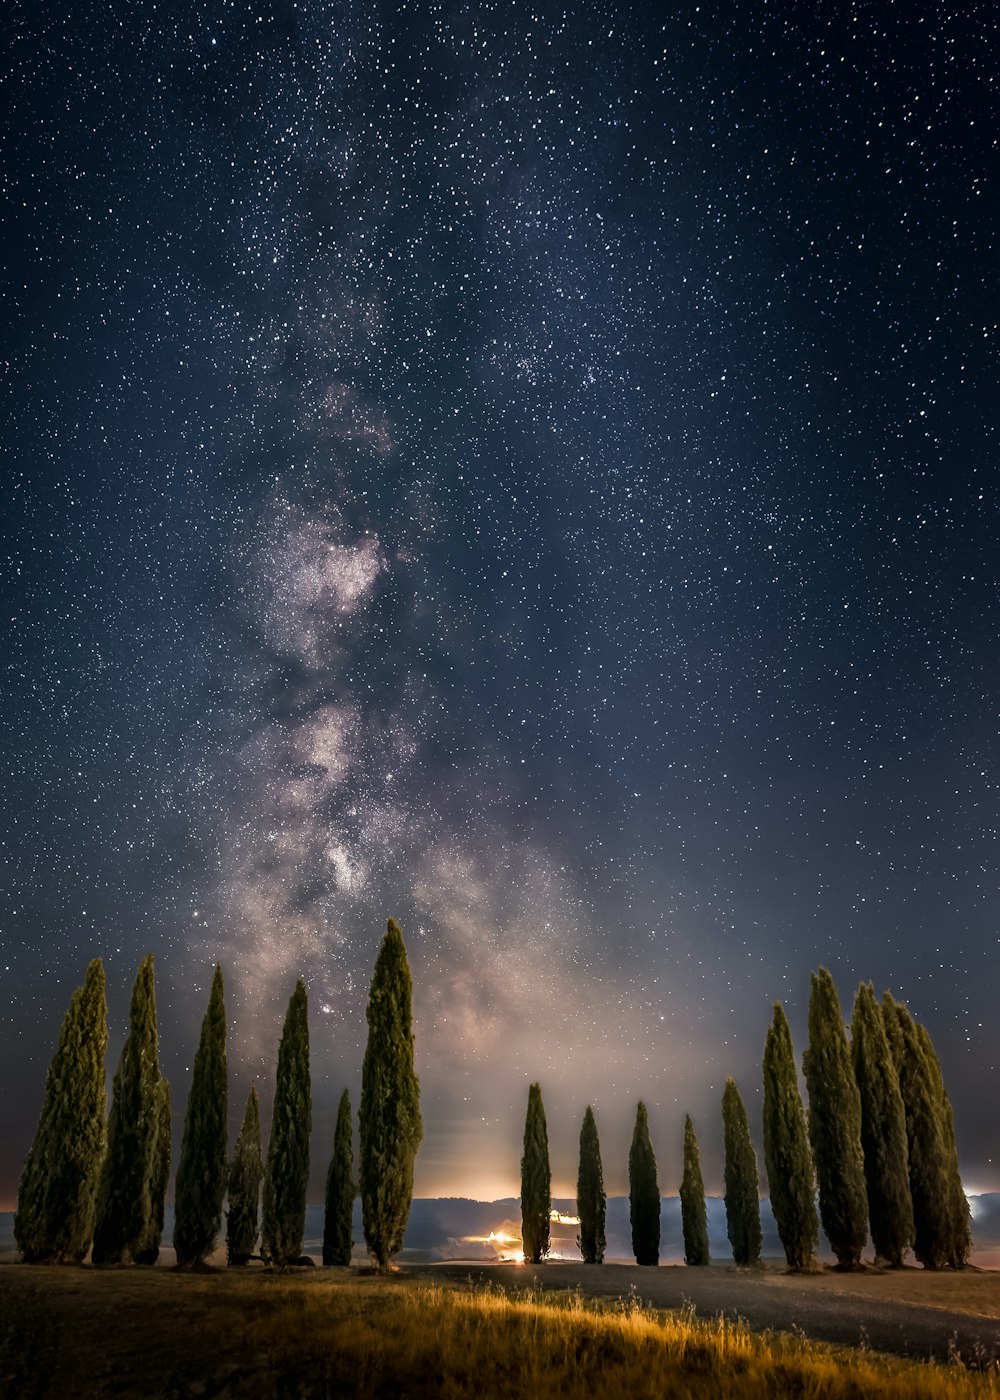 Eine Gruppe von Bäumen mit der Milchstraße am Himmel